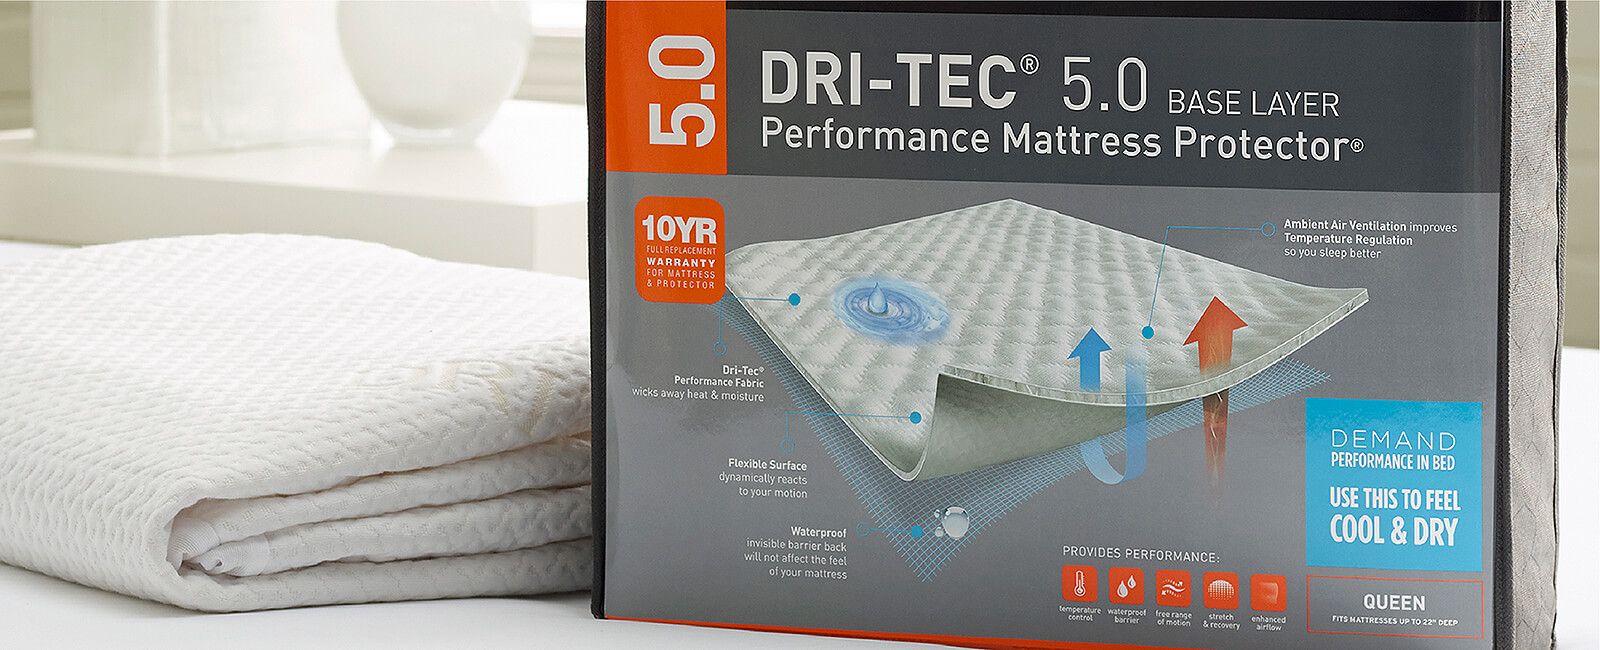 bedgear mattress protector review